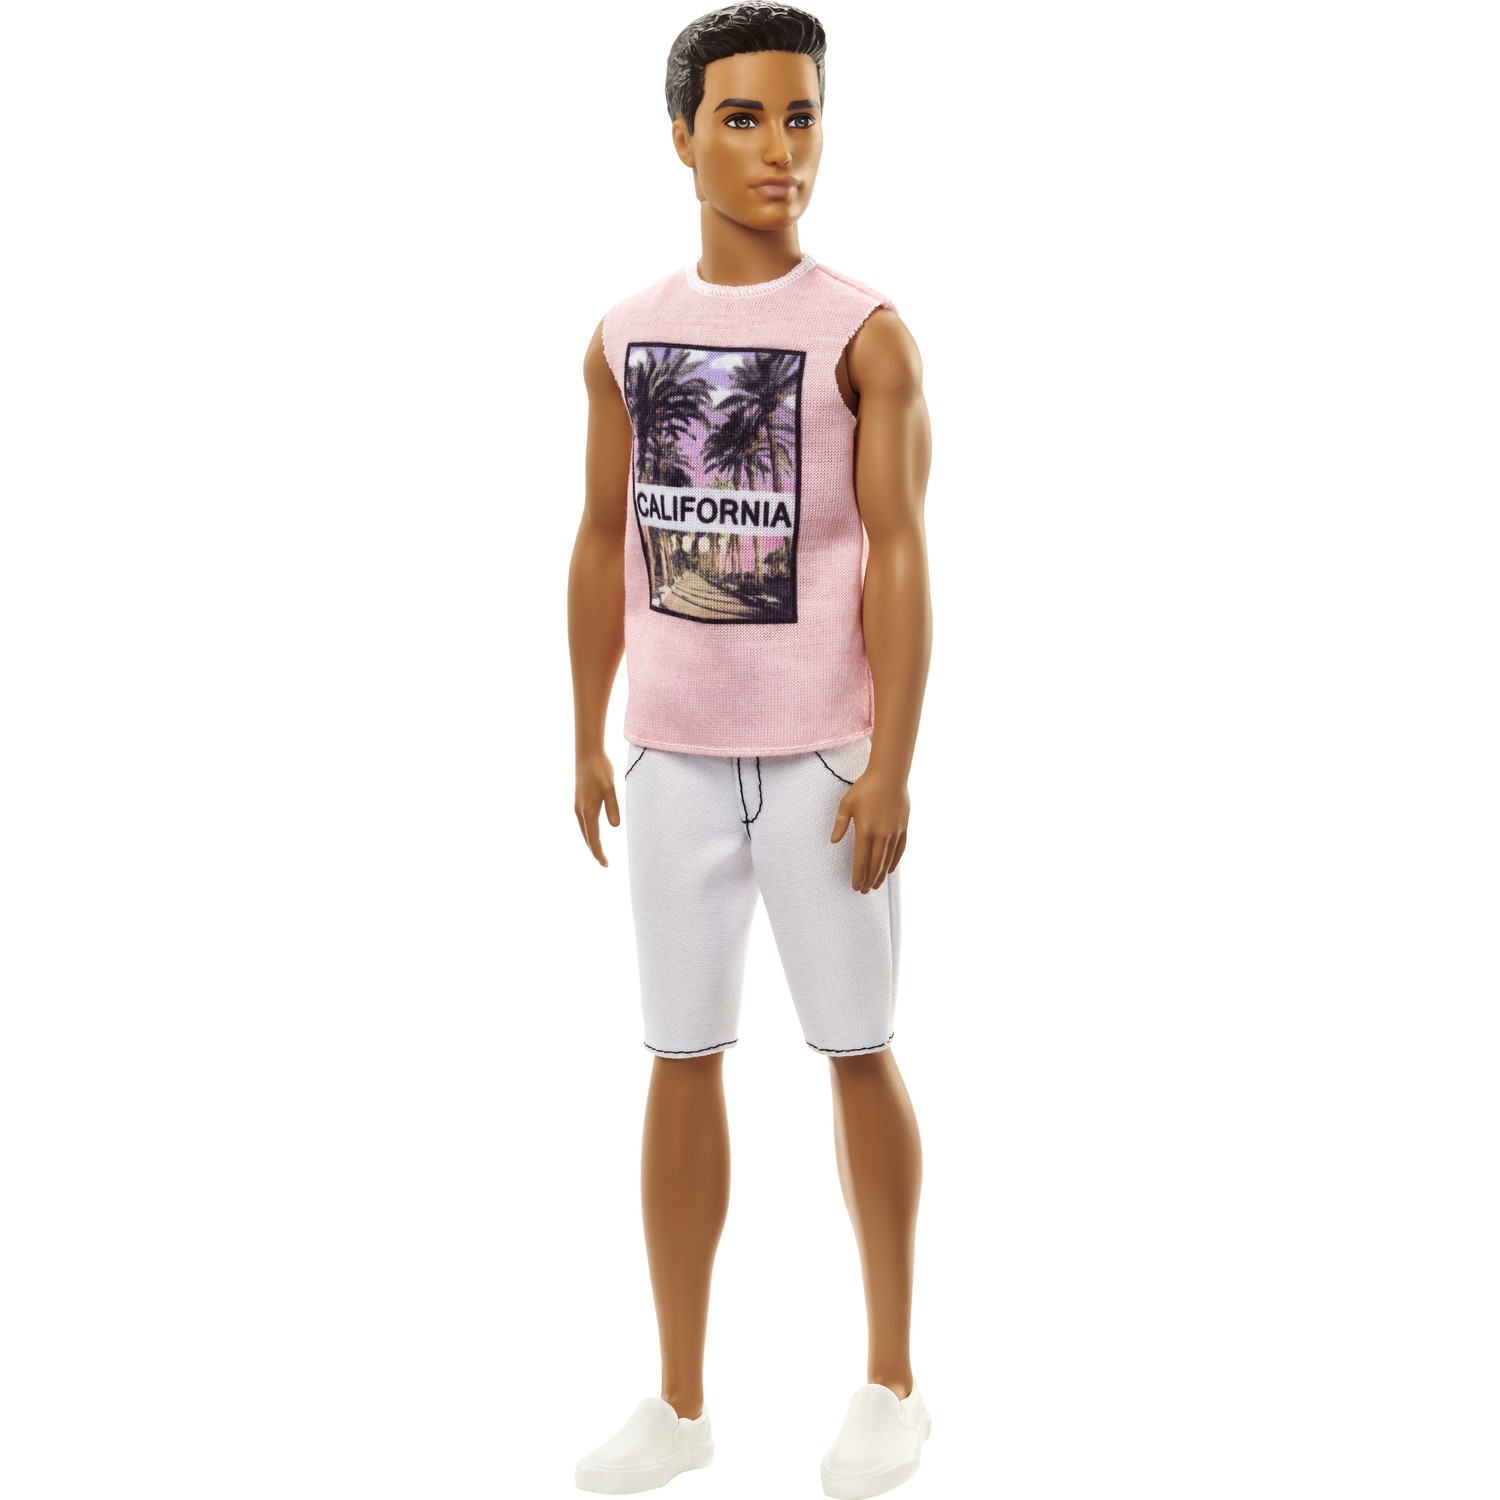 Кукла Barbie Кен barbie комплект одежды для кена cfy02 dwg76 синий коричневый